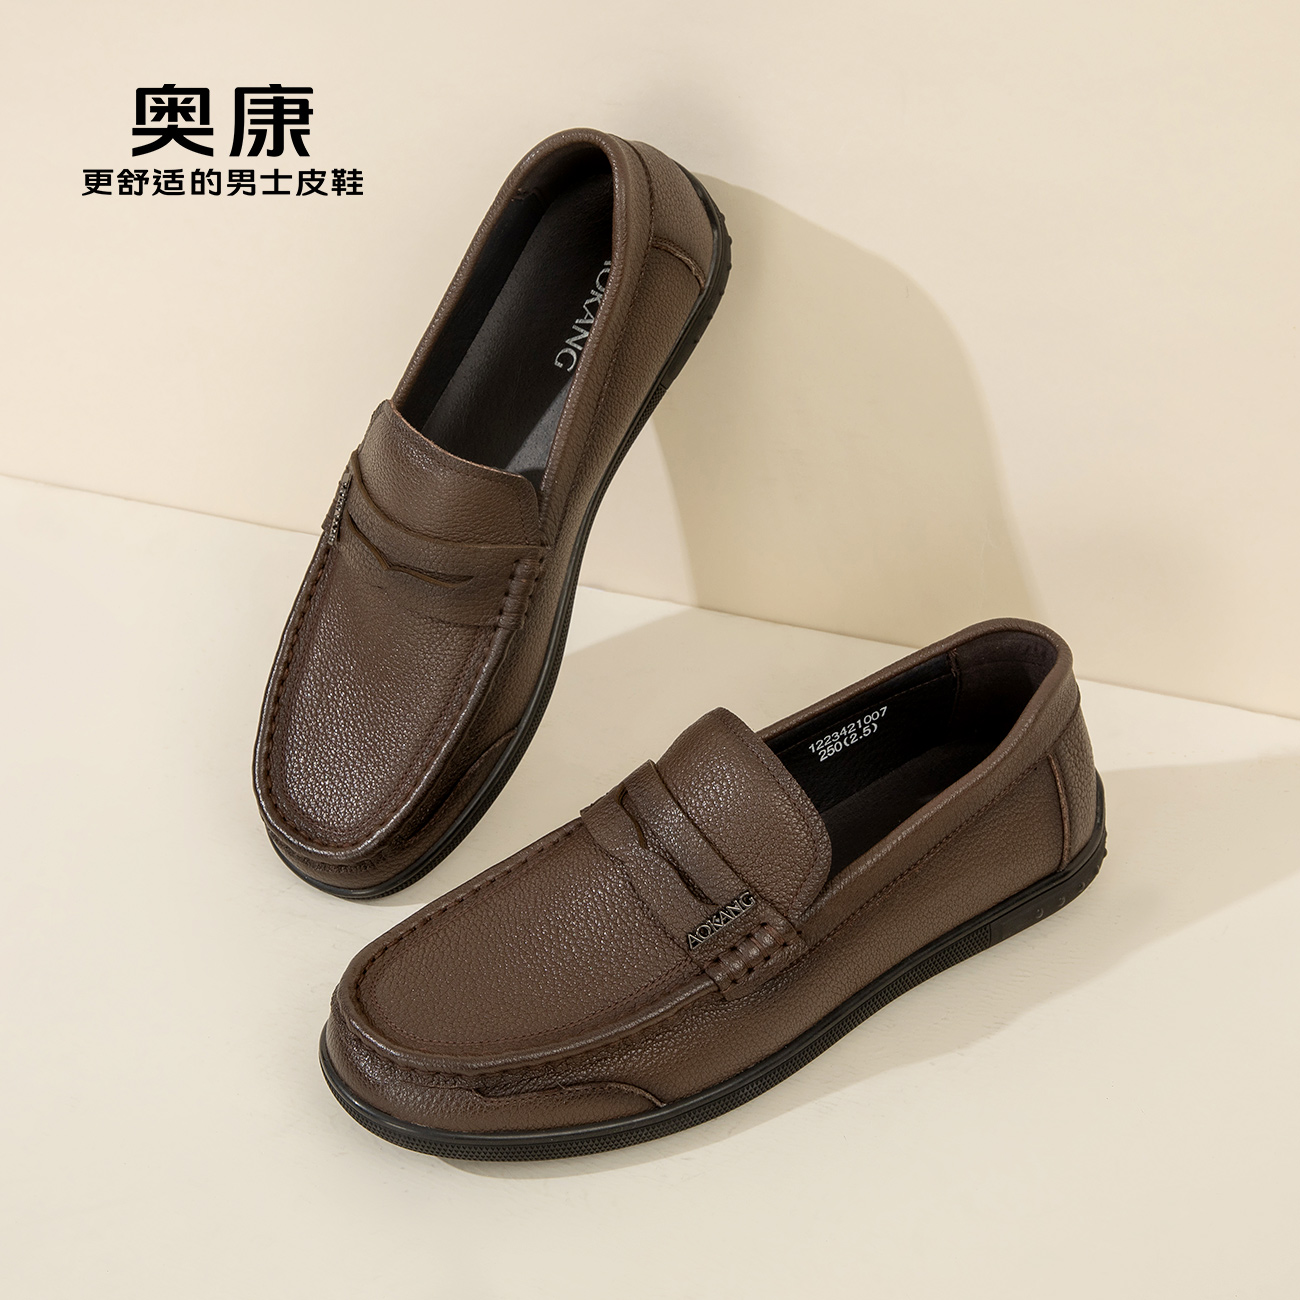 奥康男鞋秋季新款真皮一脚蹬日常休闲商务纯色耐磨品质皮鞋